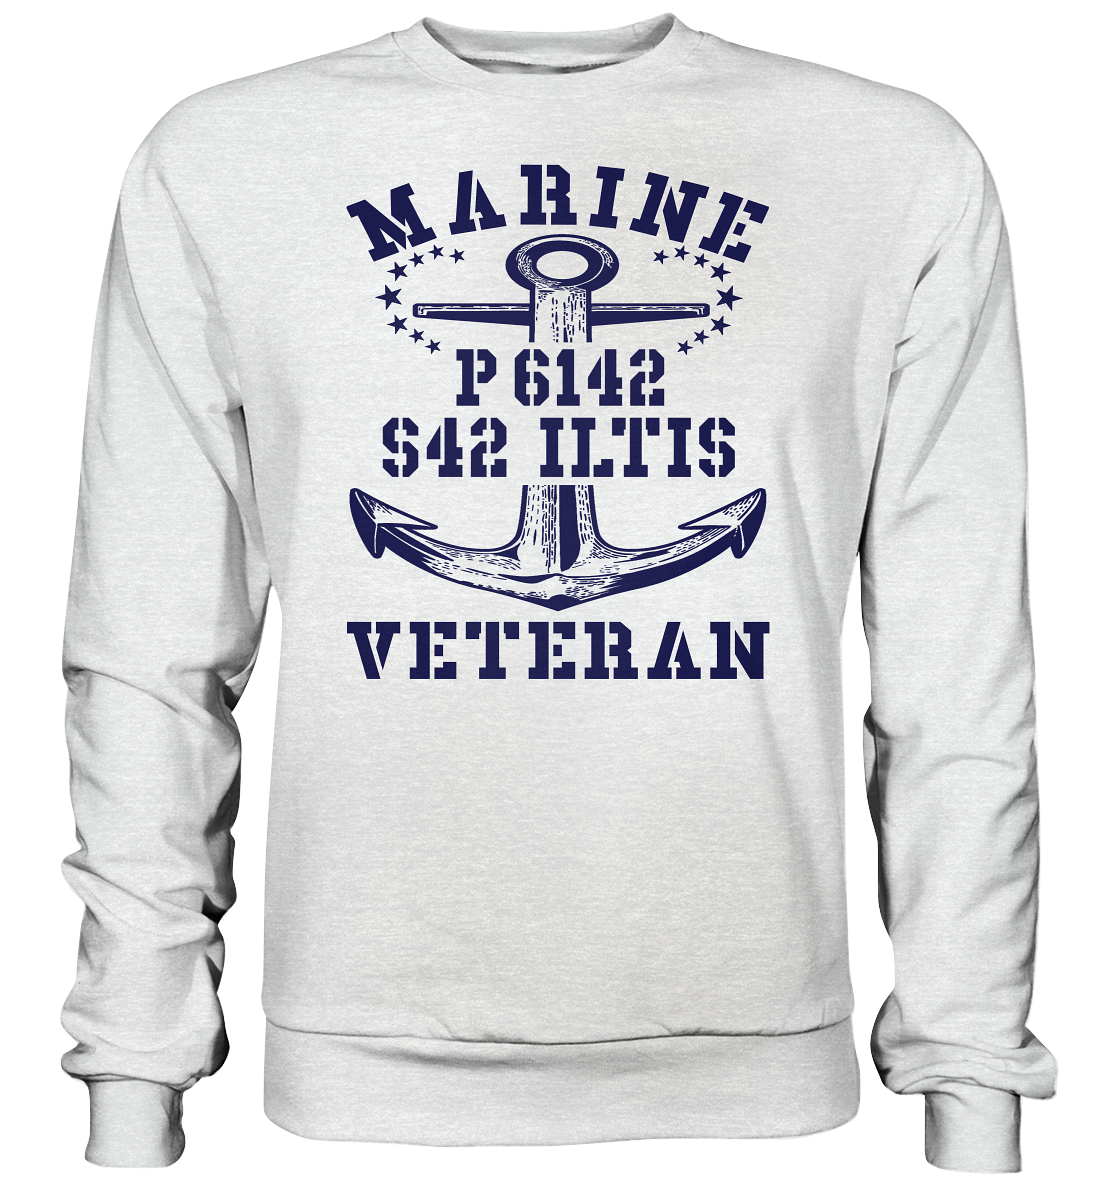 P6142 S42 ILTIS Marine Veteran - Premium Sweatshirt